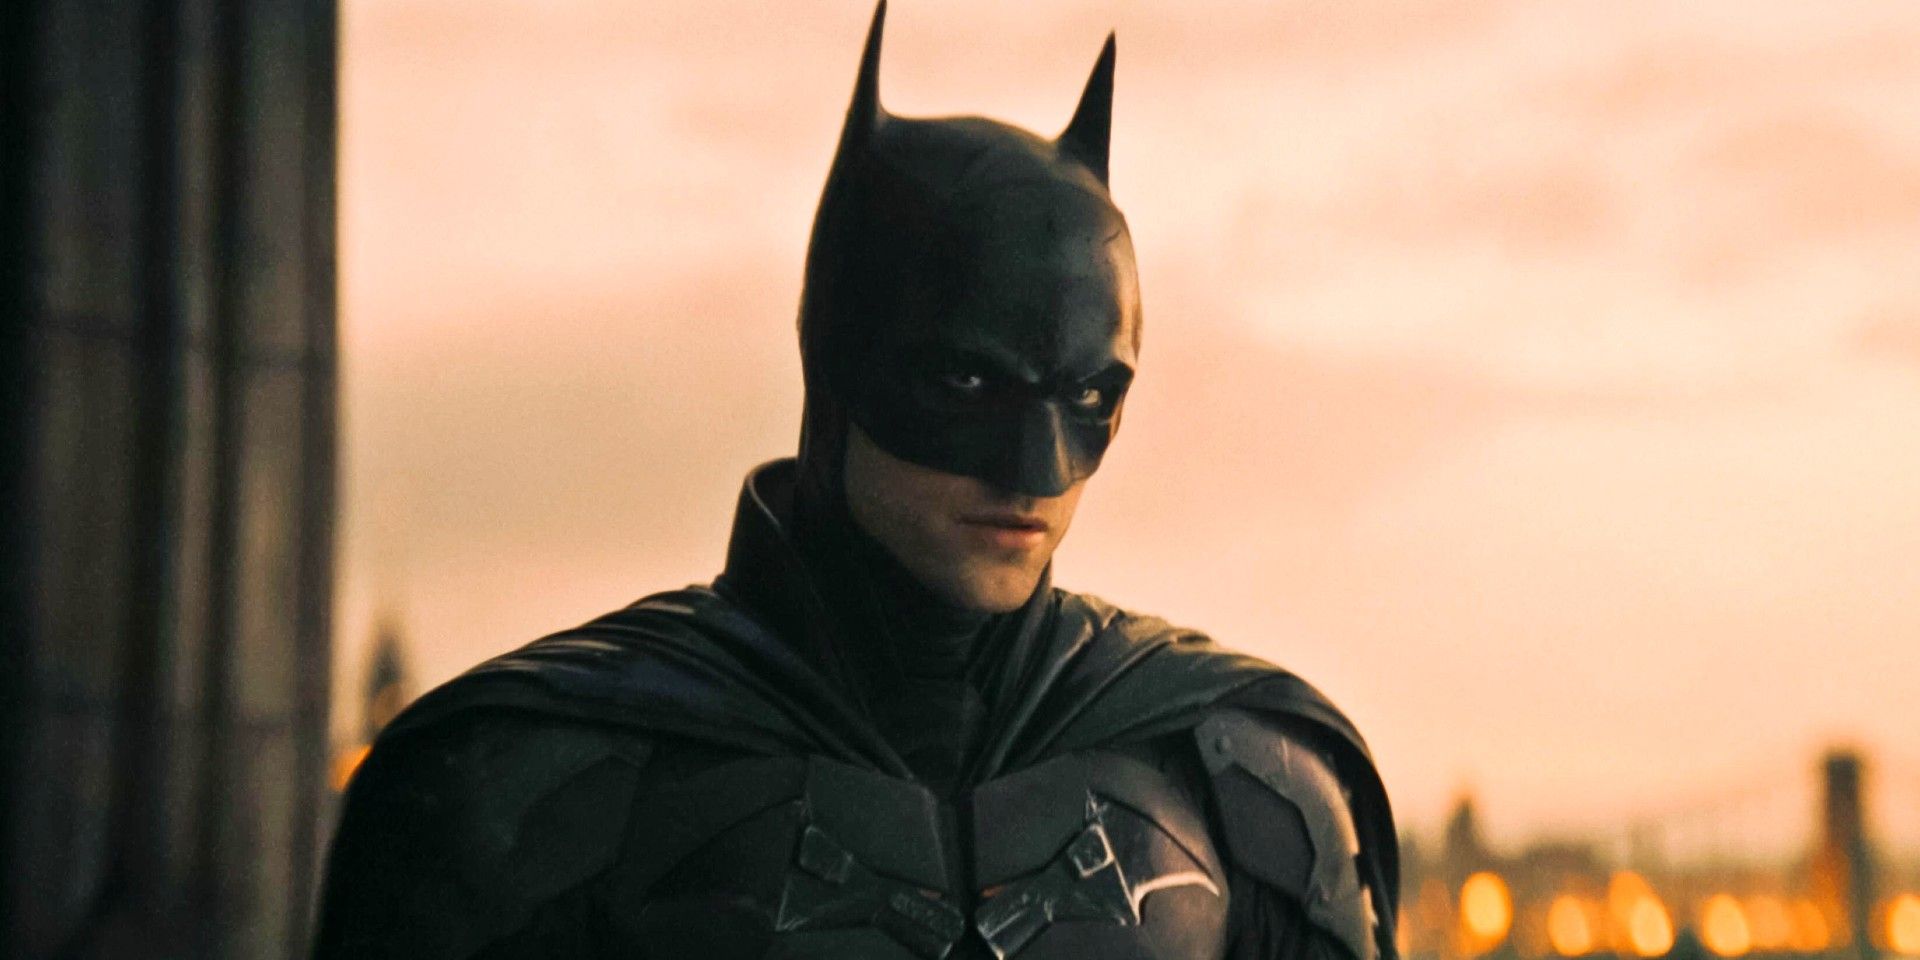 Robert Pattinson in The Batman with Gotham behind him